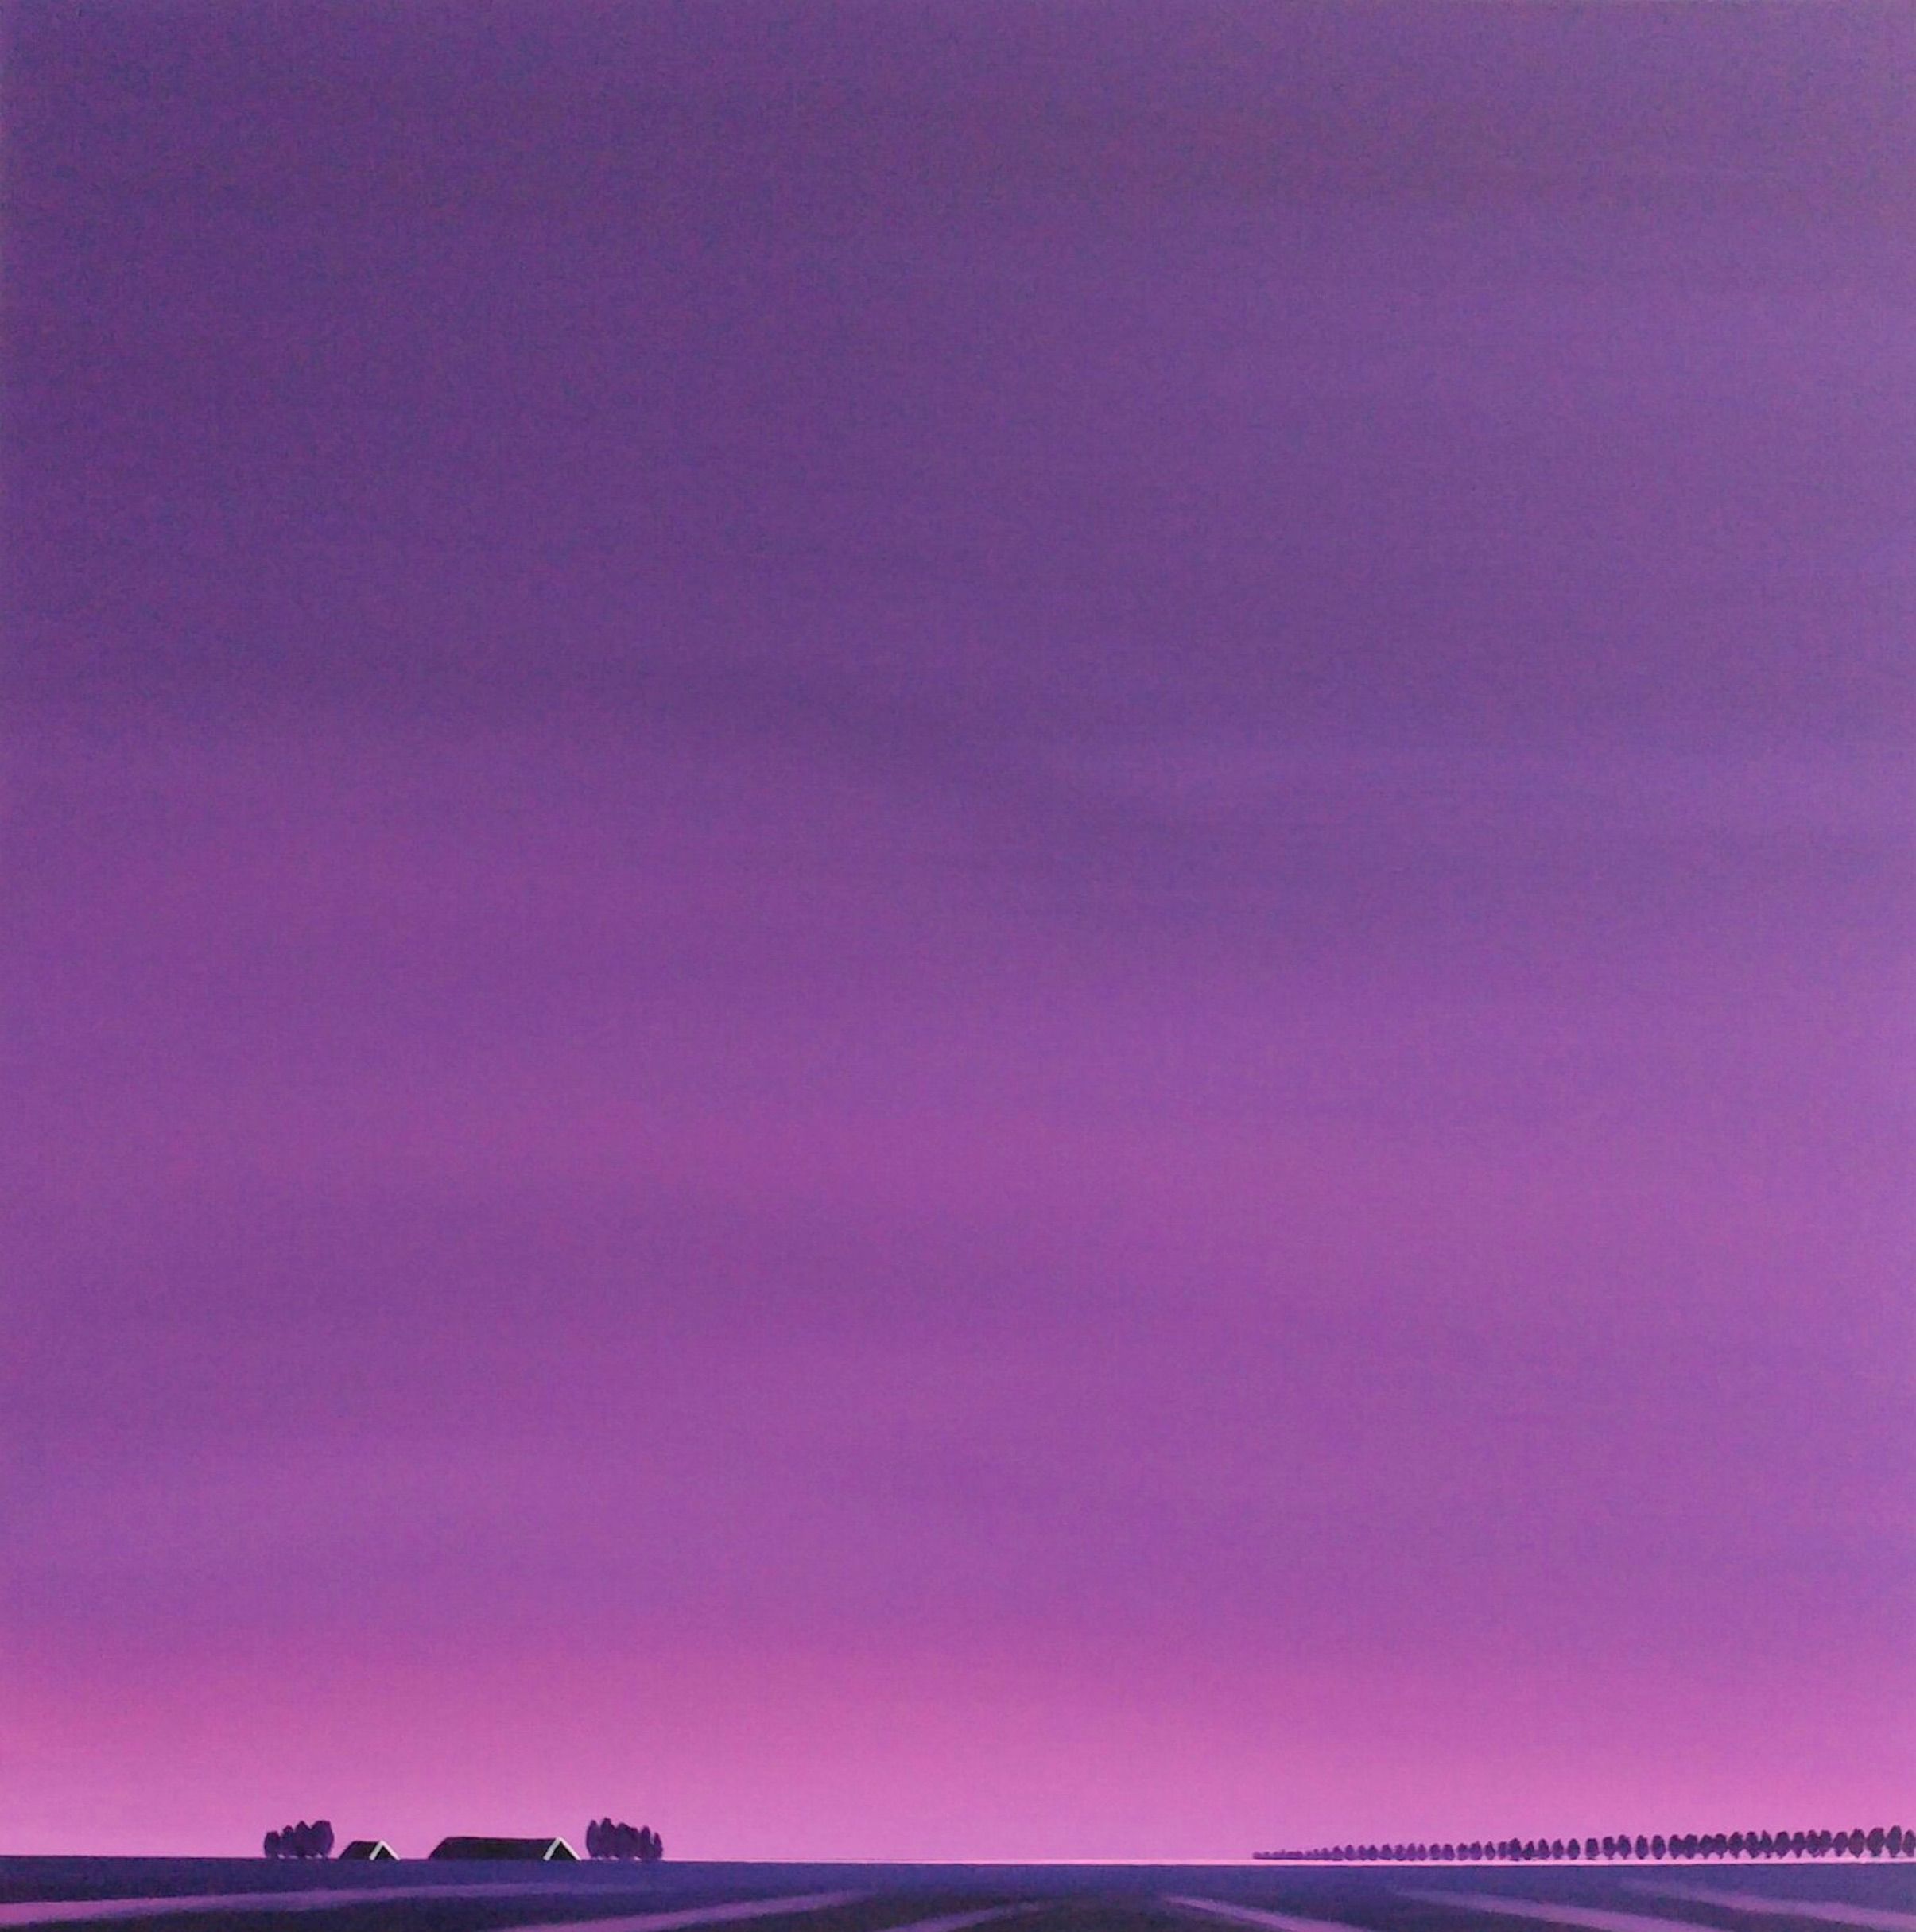 Nelly van Nieuwenhuijzen的 "Dageraad，告别黑夜 "画作展示了泽兰的一幅风景。紫色的天空，粉紫色的日出反映在土地上的足迹和黑暗的屋顶上，很强烈，几乎是压倒性的